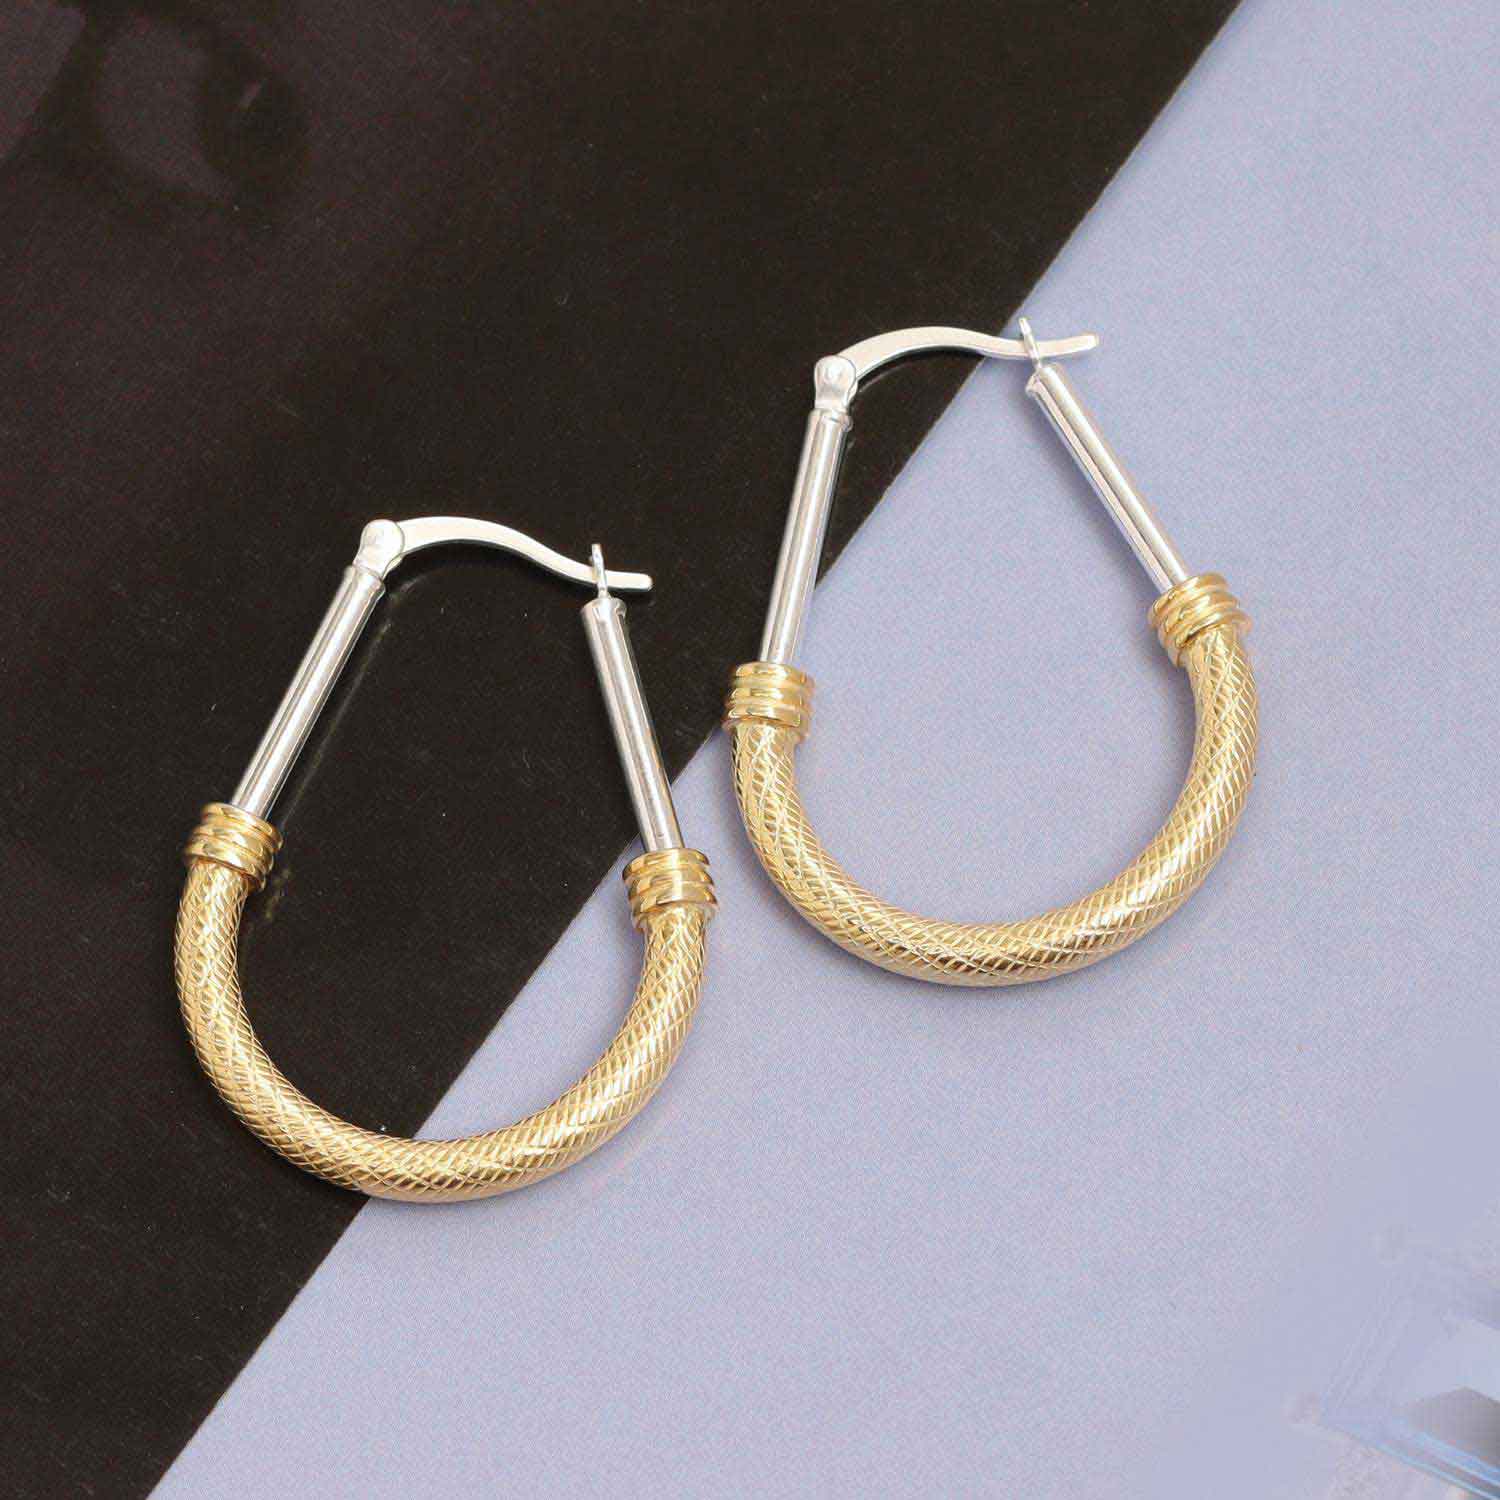 925 Sterling Silver Jewellery Two-Tone Oval Diamond-Cut Italian Design Click-Top Hoop Earrings for Women